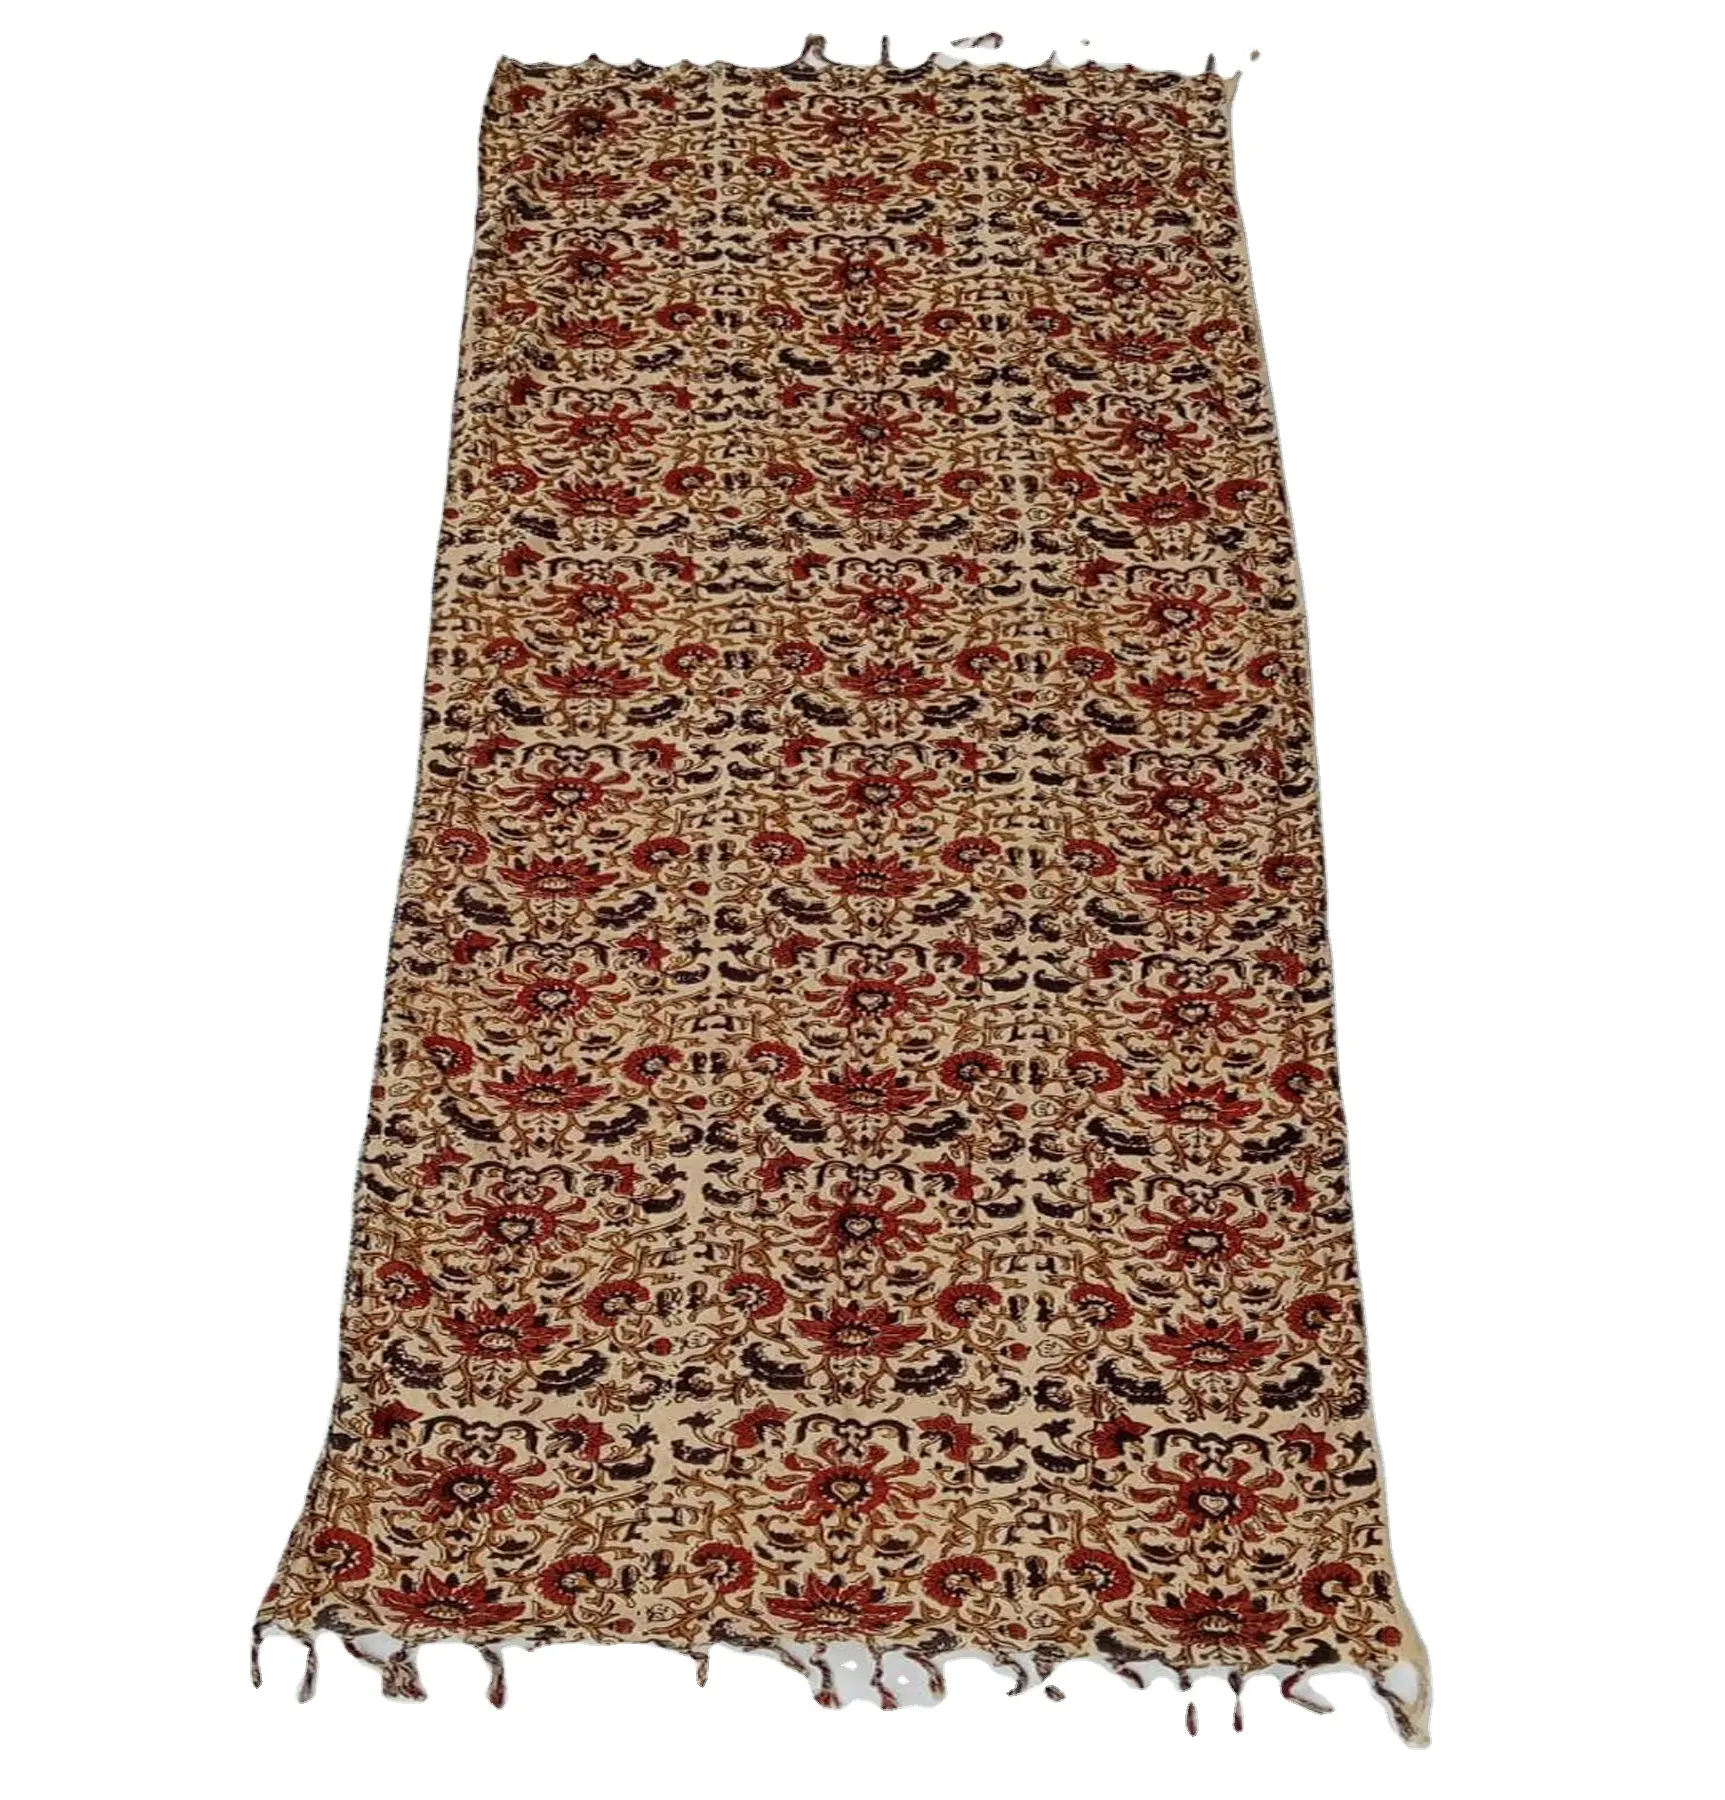 100% Katoen Vrouwen Keffiyeh Arabische Sjaal Rood Wit Digital Print Patroon Materiaal Veelzijdige Kleur Sjaal Zachte Textuur Sjaals